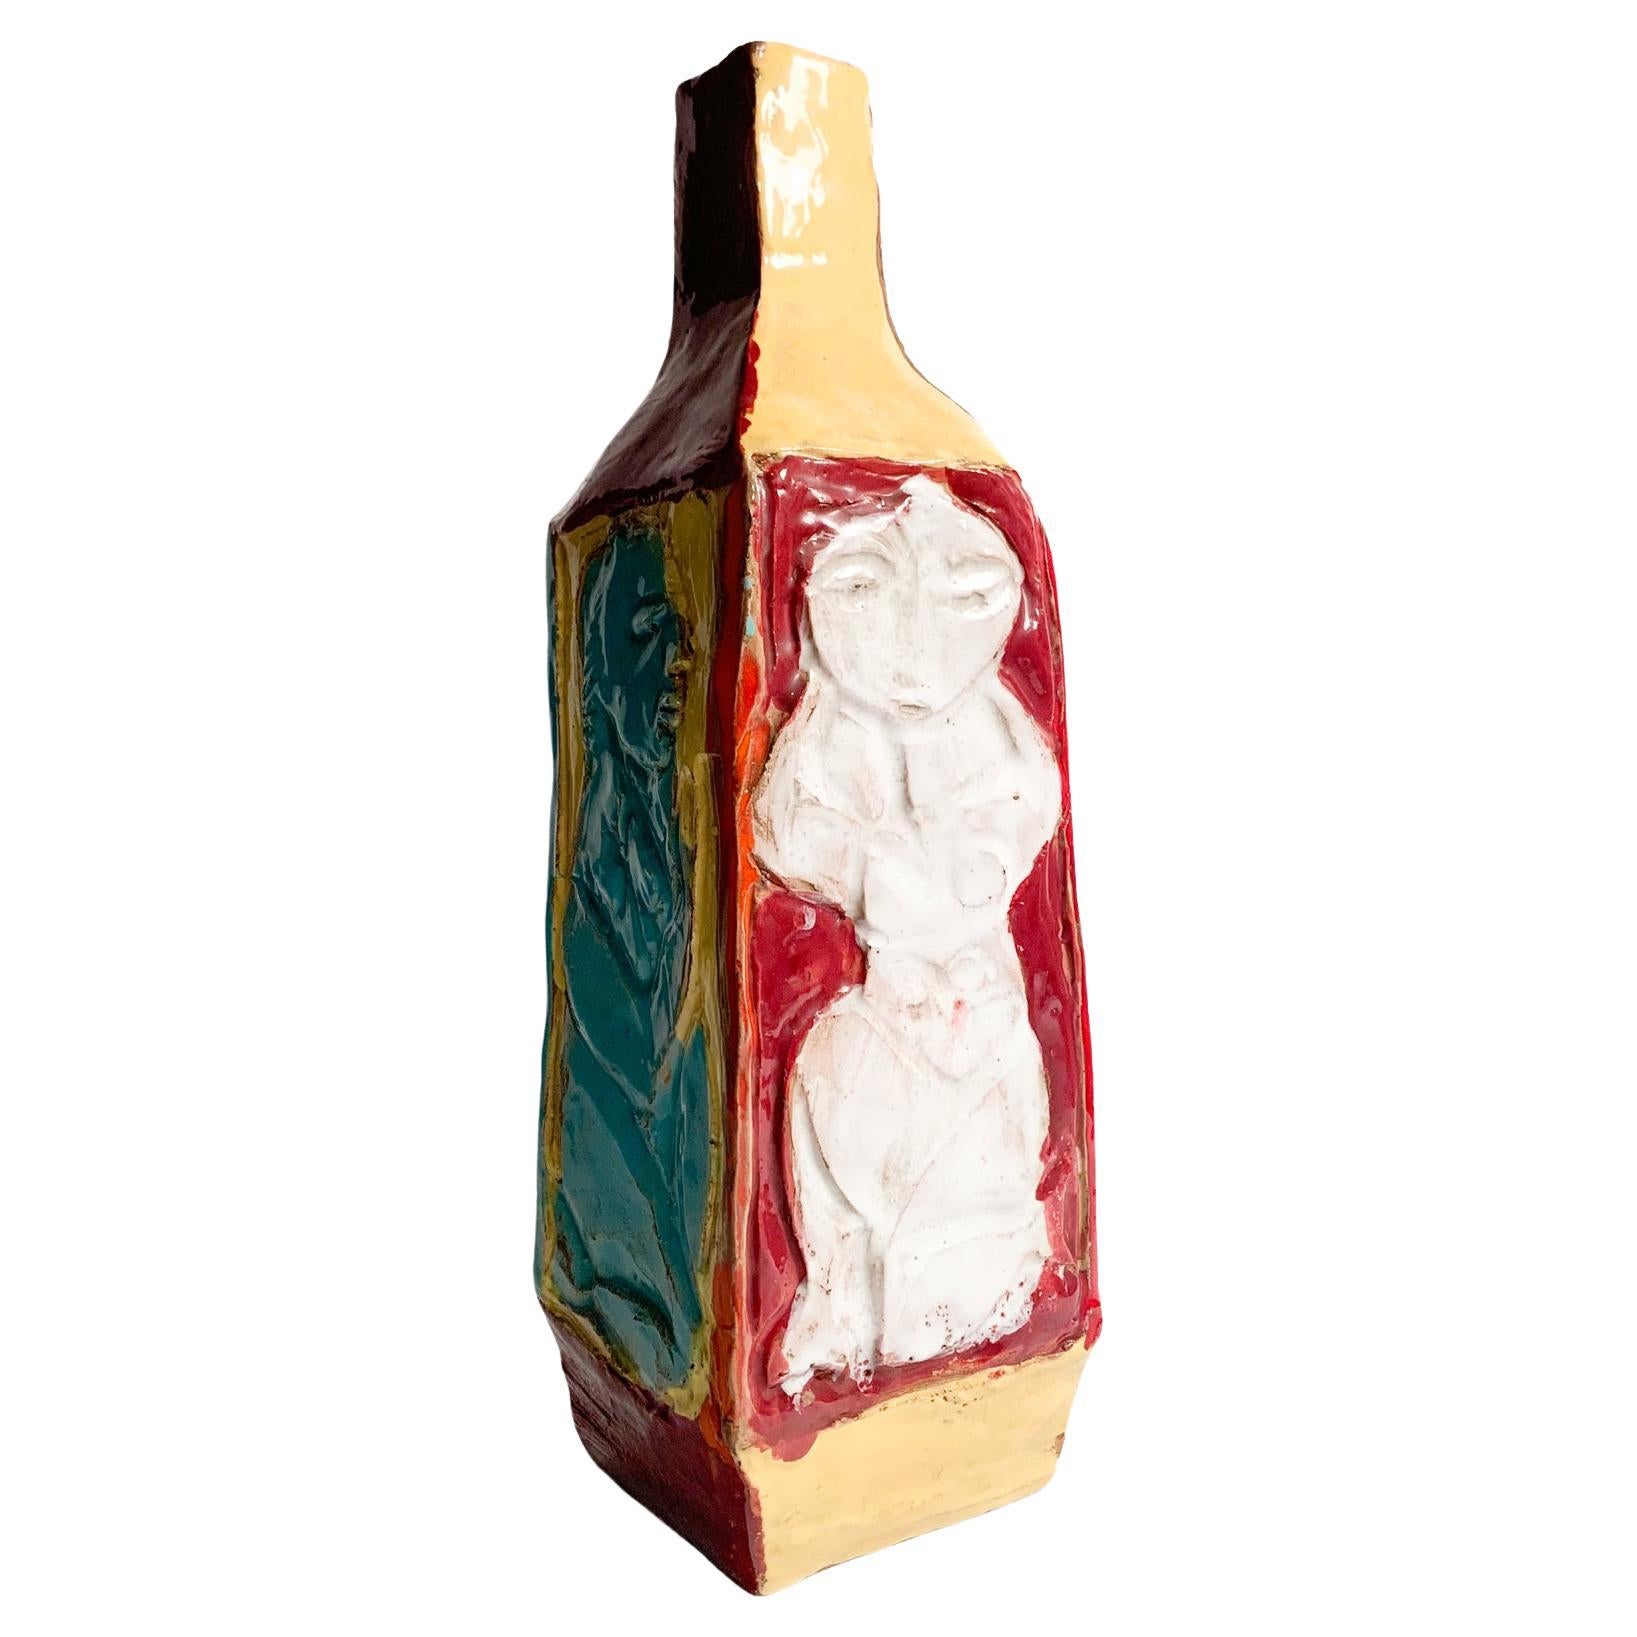 Vase en céramique multicolore de forme géométrique, en relief, dont la création est attribuée à la manufacture Cantagalli dans les années 1950.

Ø 13 cm h 31 cm

Cantagalli est une entreprise italienne historique spécialisée dans la production de